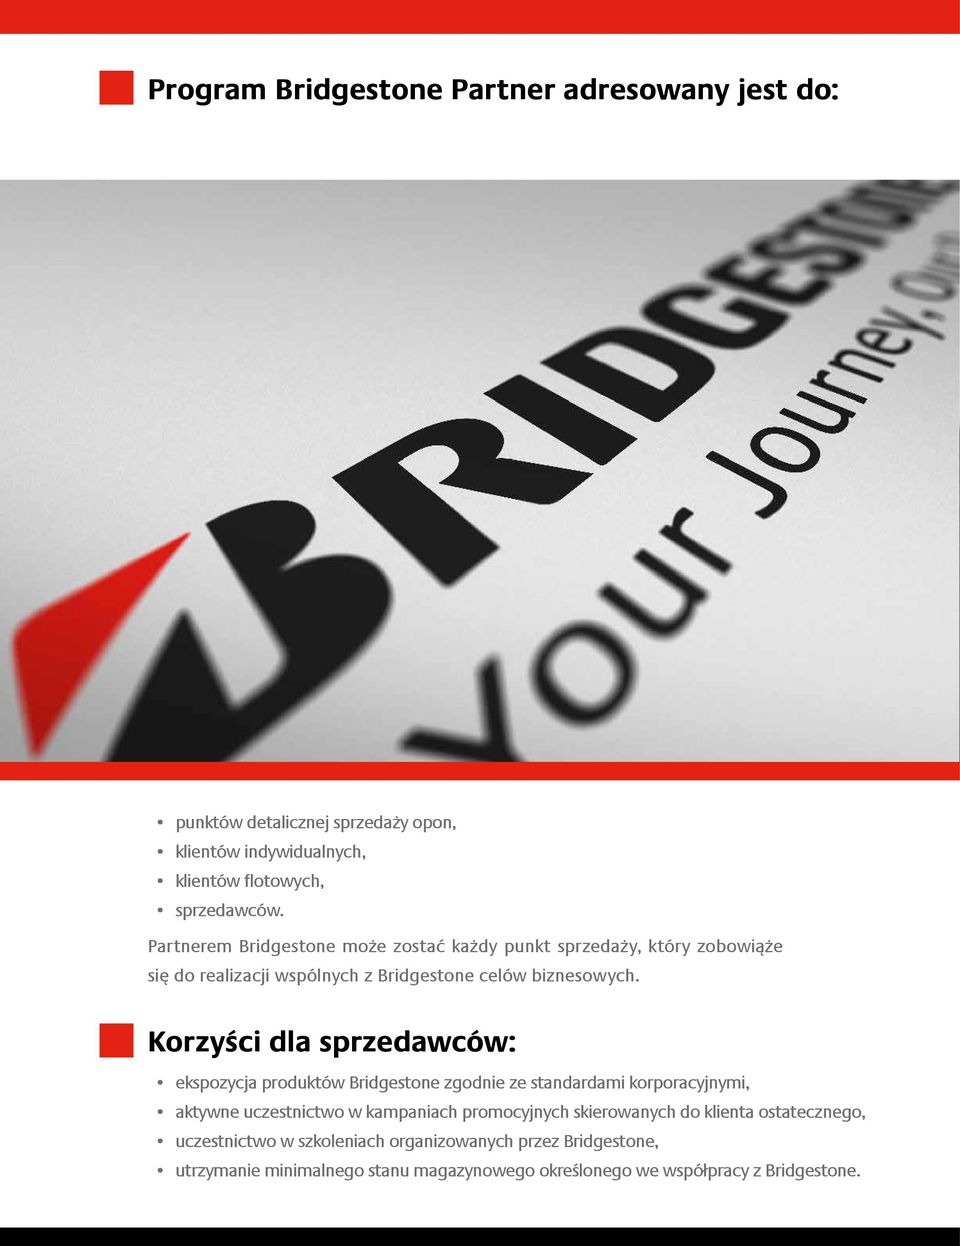 Korzyści dla sprzedawców: ekspozycja produktów Bridgestone zgodnie ze standardami korporacyjnymi, aktywne uczestnictwo w kampaniach promocyjnych